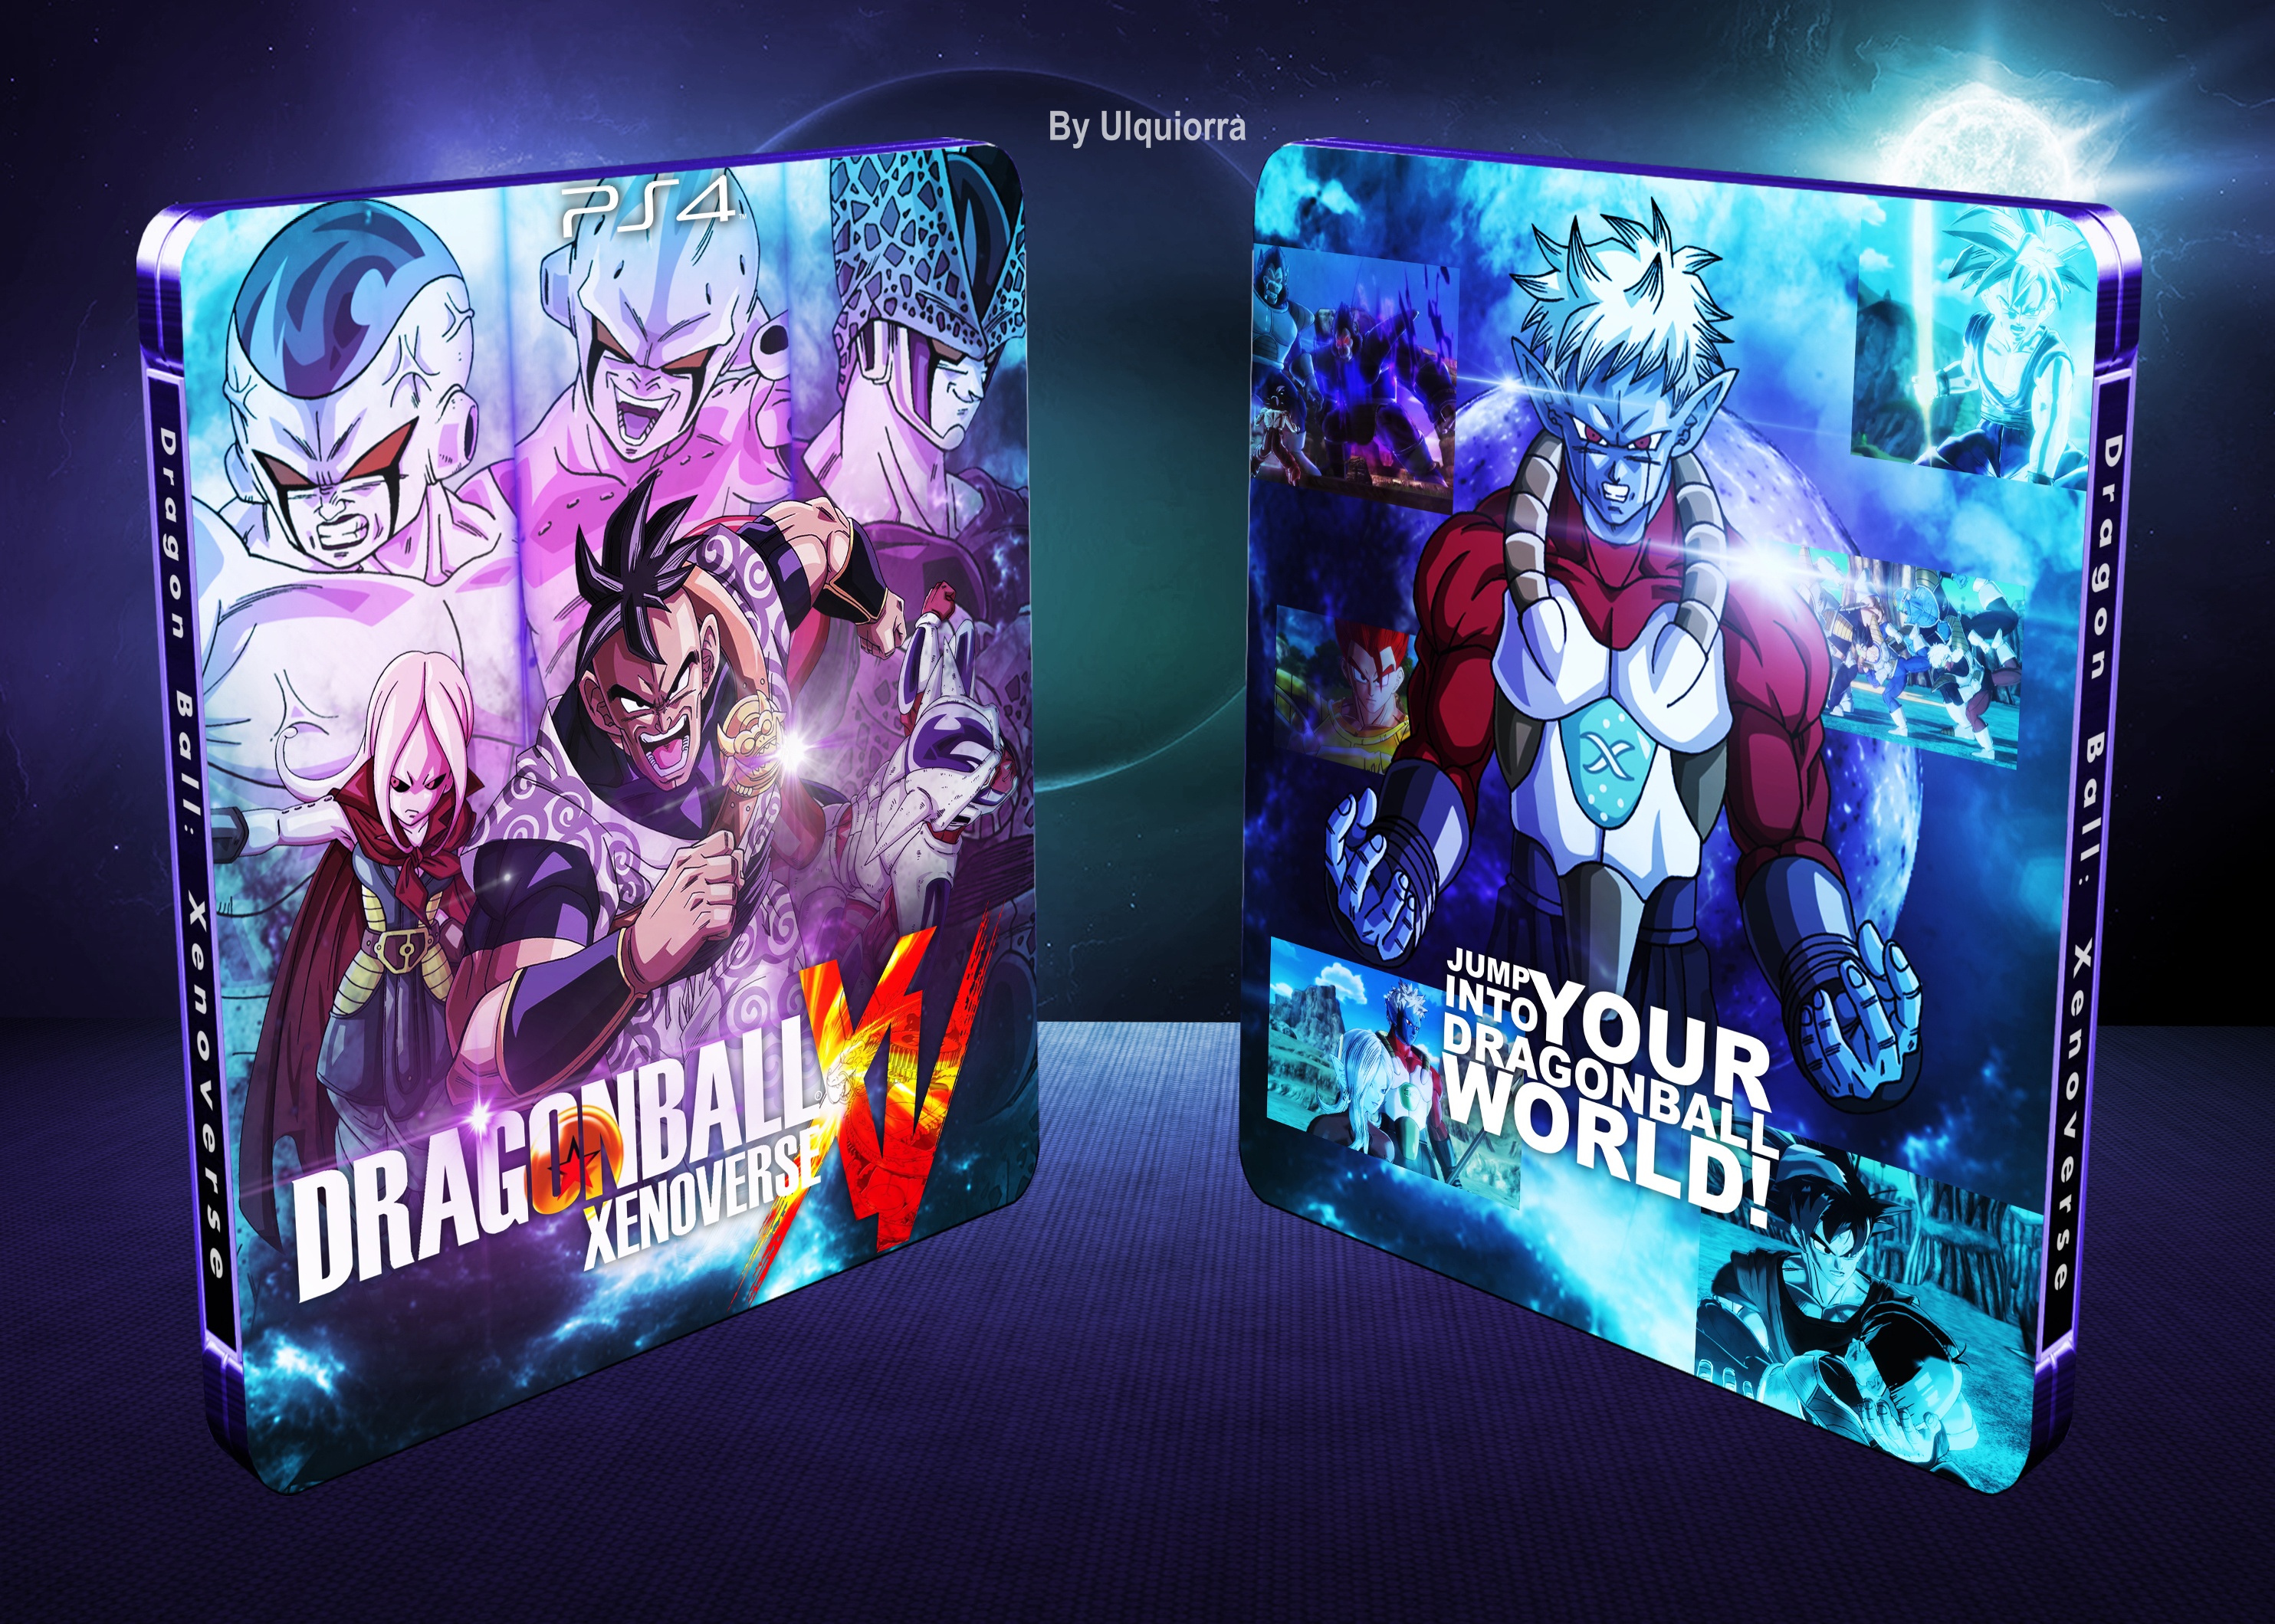 Dragon Ball Xenoverse box cover